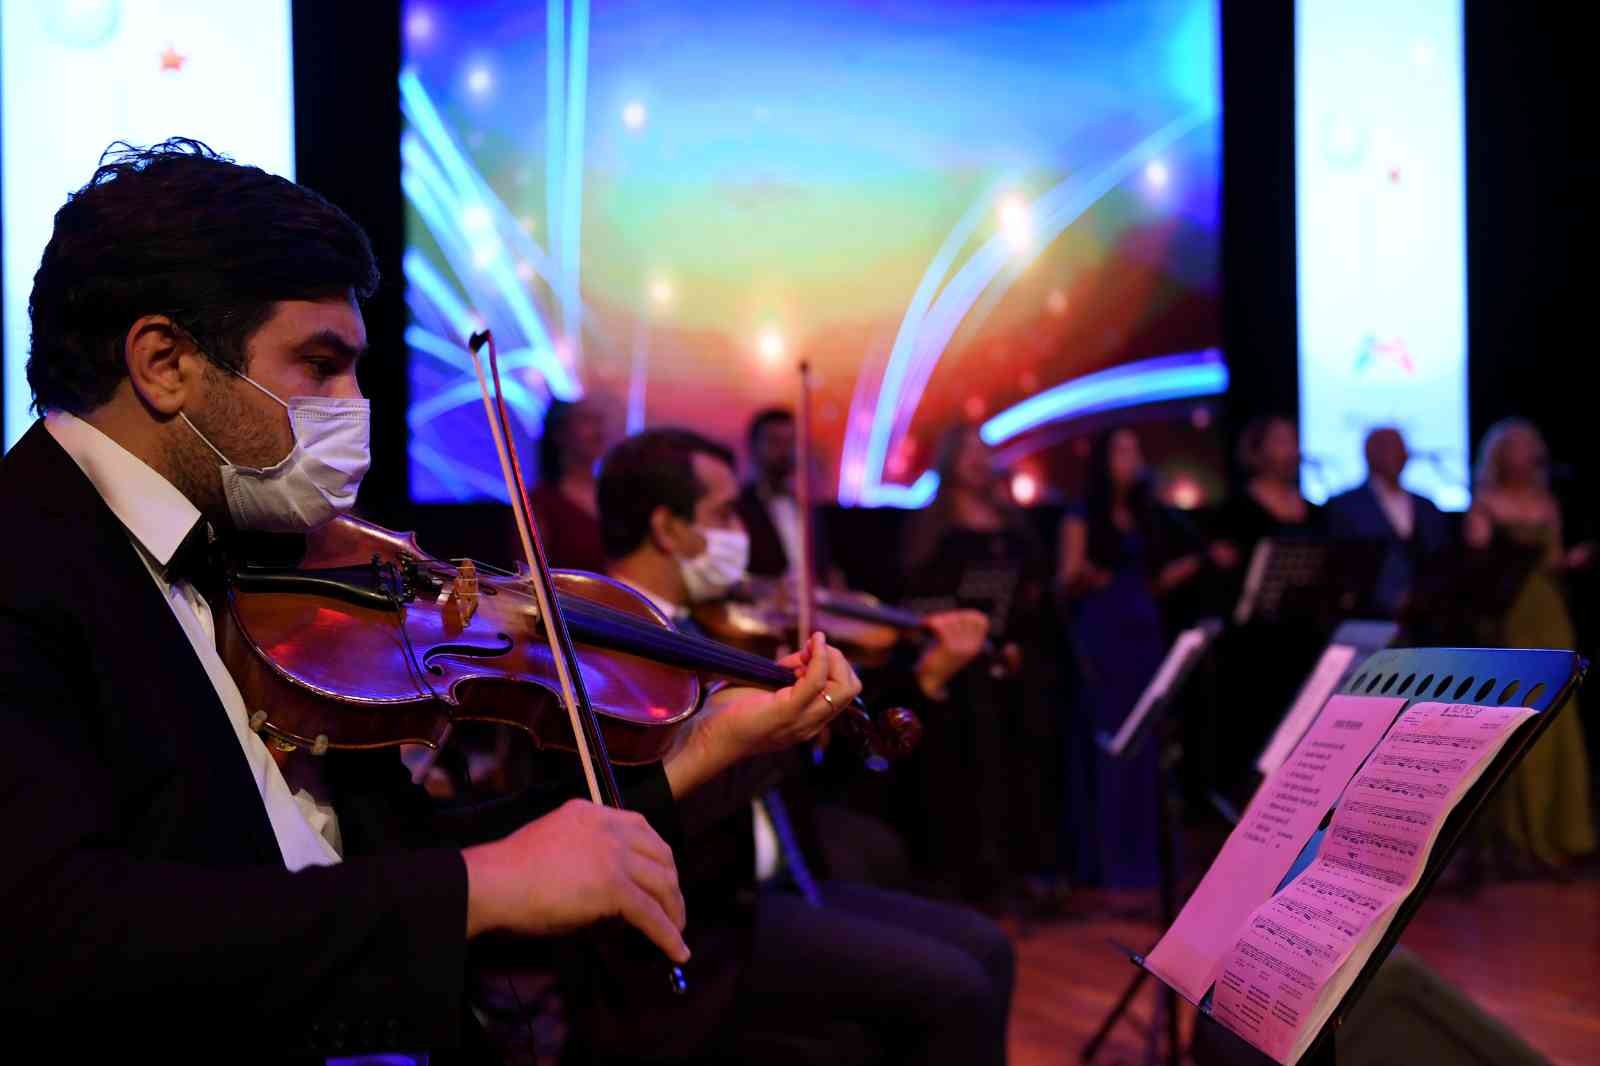 Mersin'de Kent Orkestrasına sanatçı alımı yapılacak